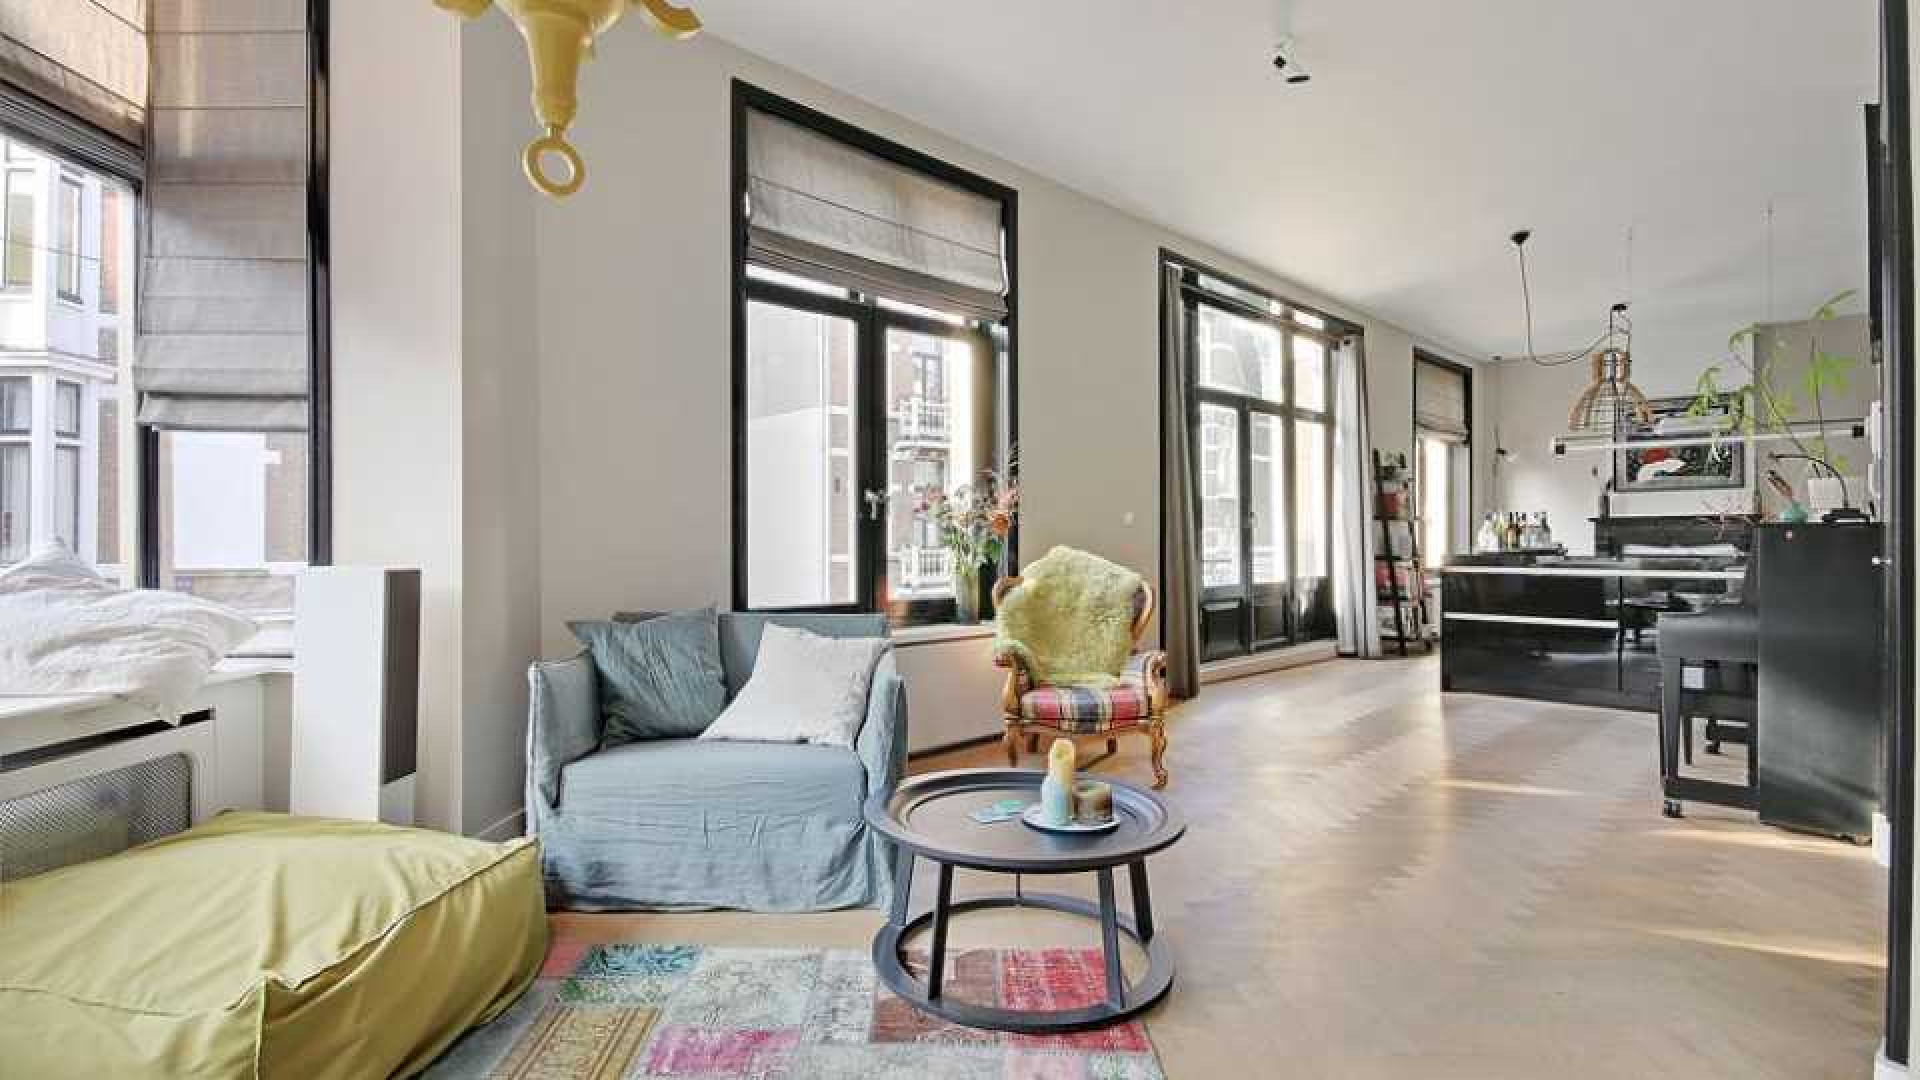 Leco van Zadelhoff koopt voor miljoen euro luxe appartement. Zie foto's 2